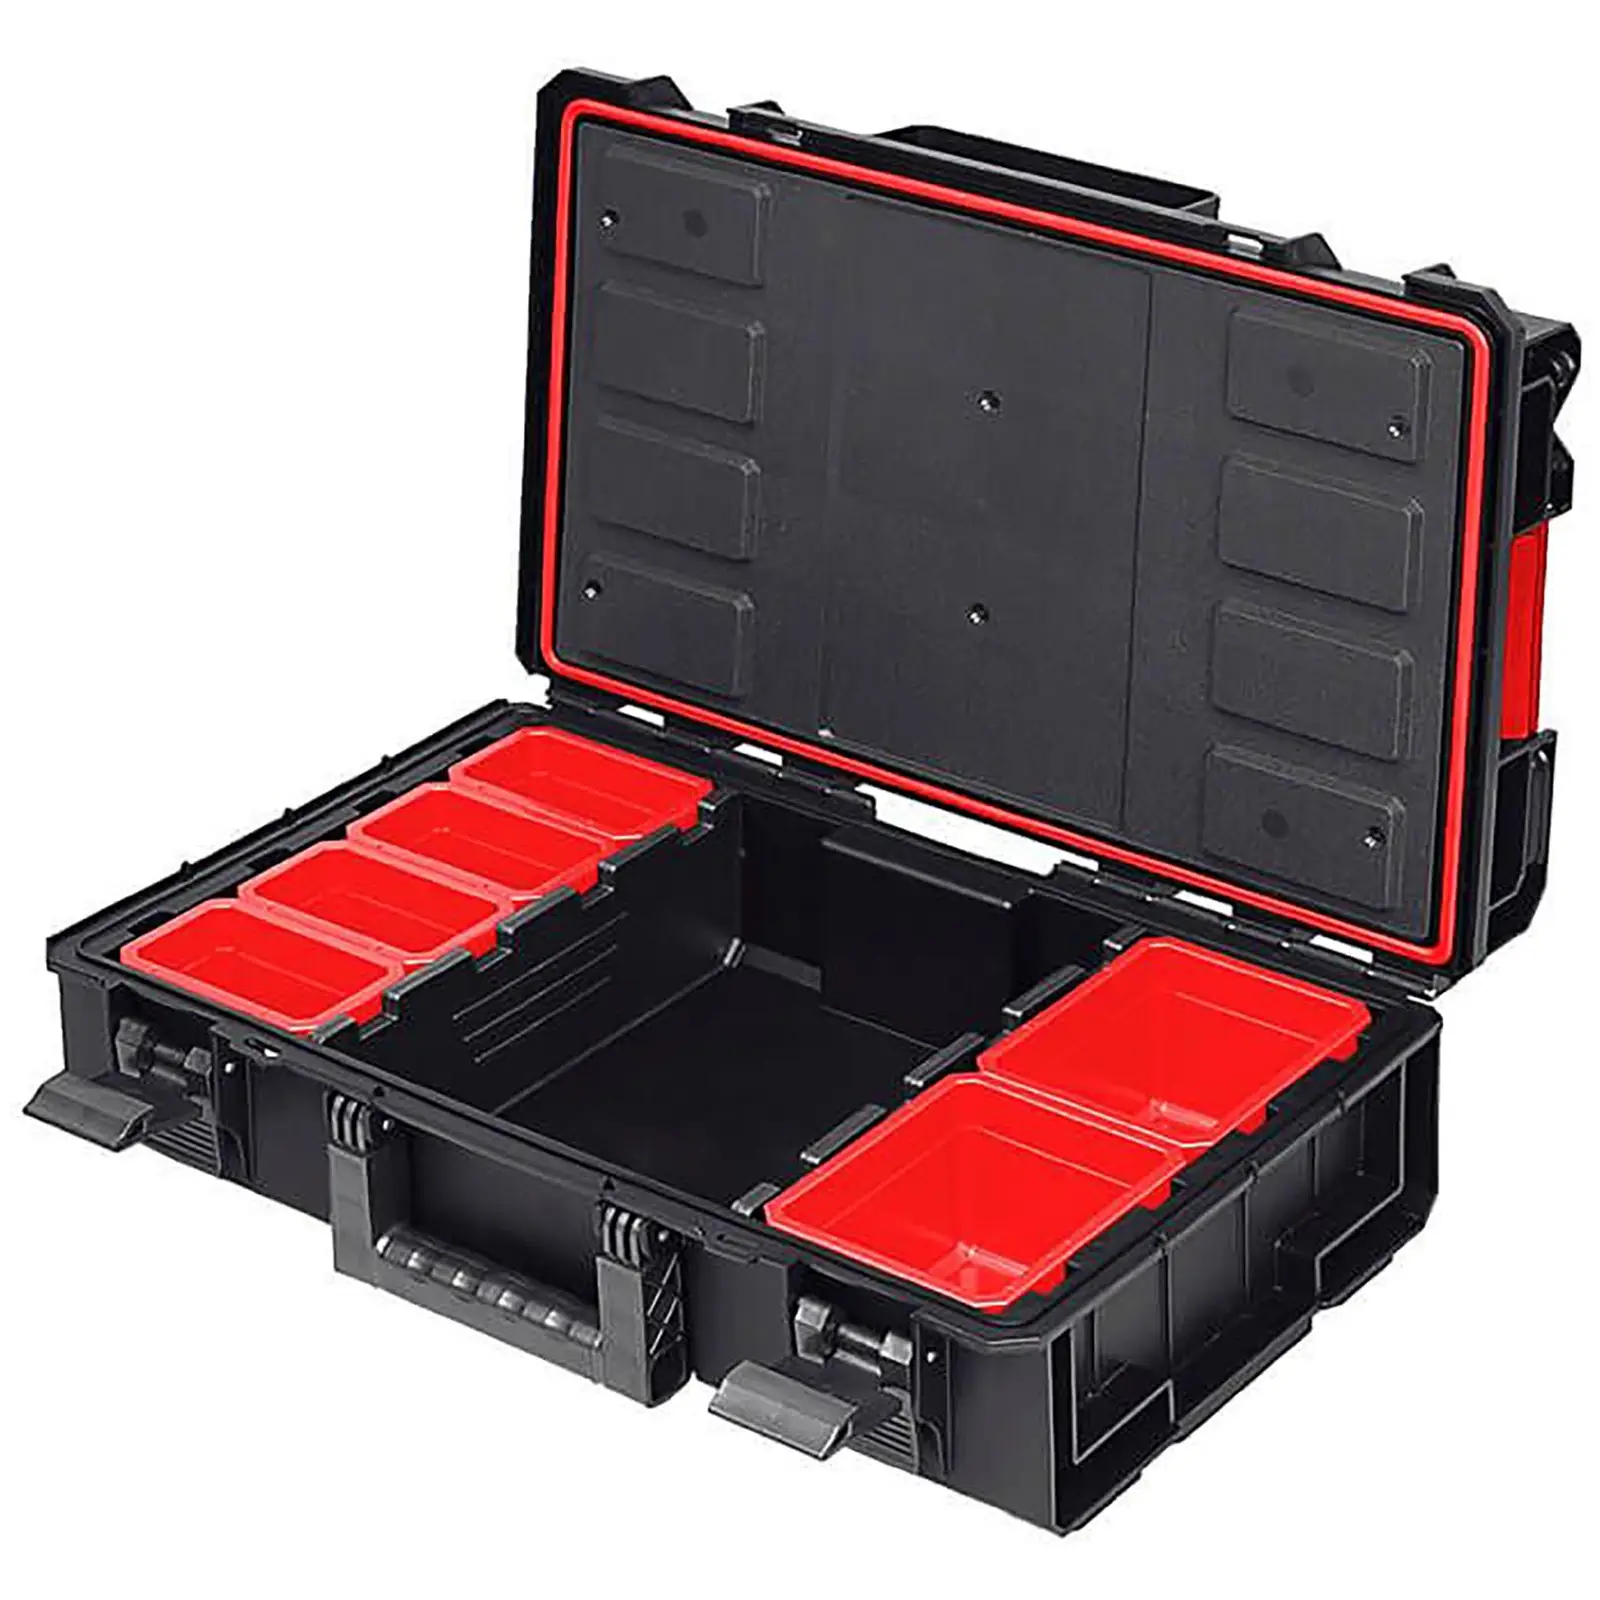 Кутия за инструменти System One Basic - 3 калъфа - 1 транспортна количка